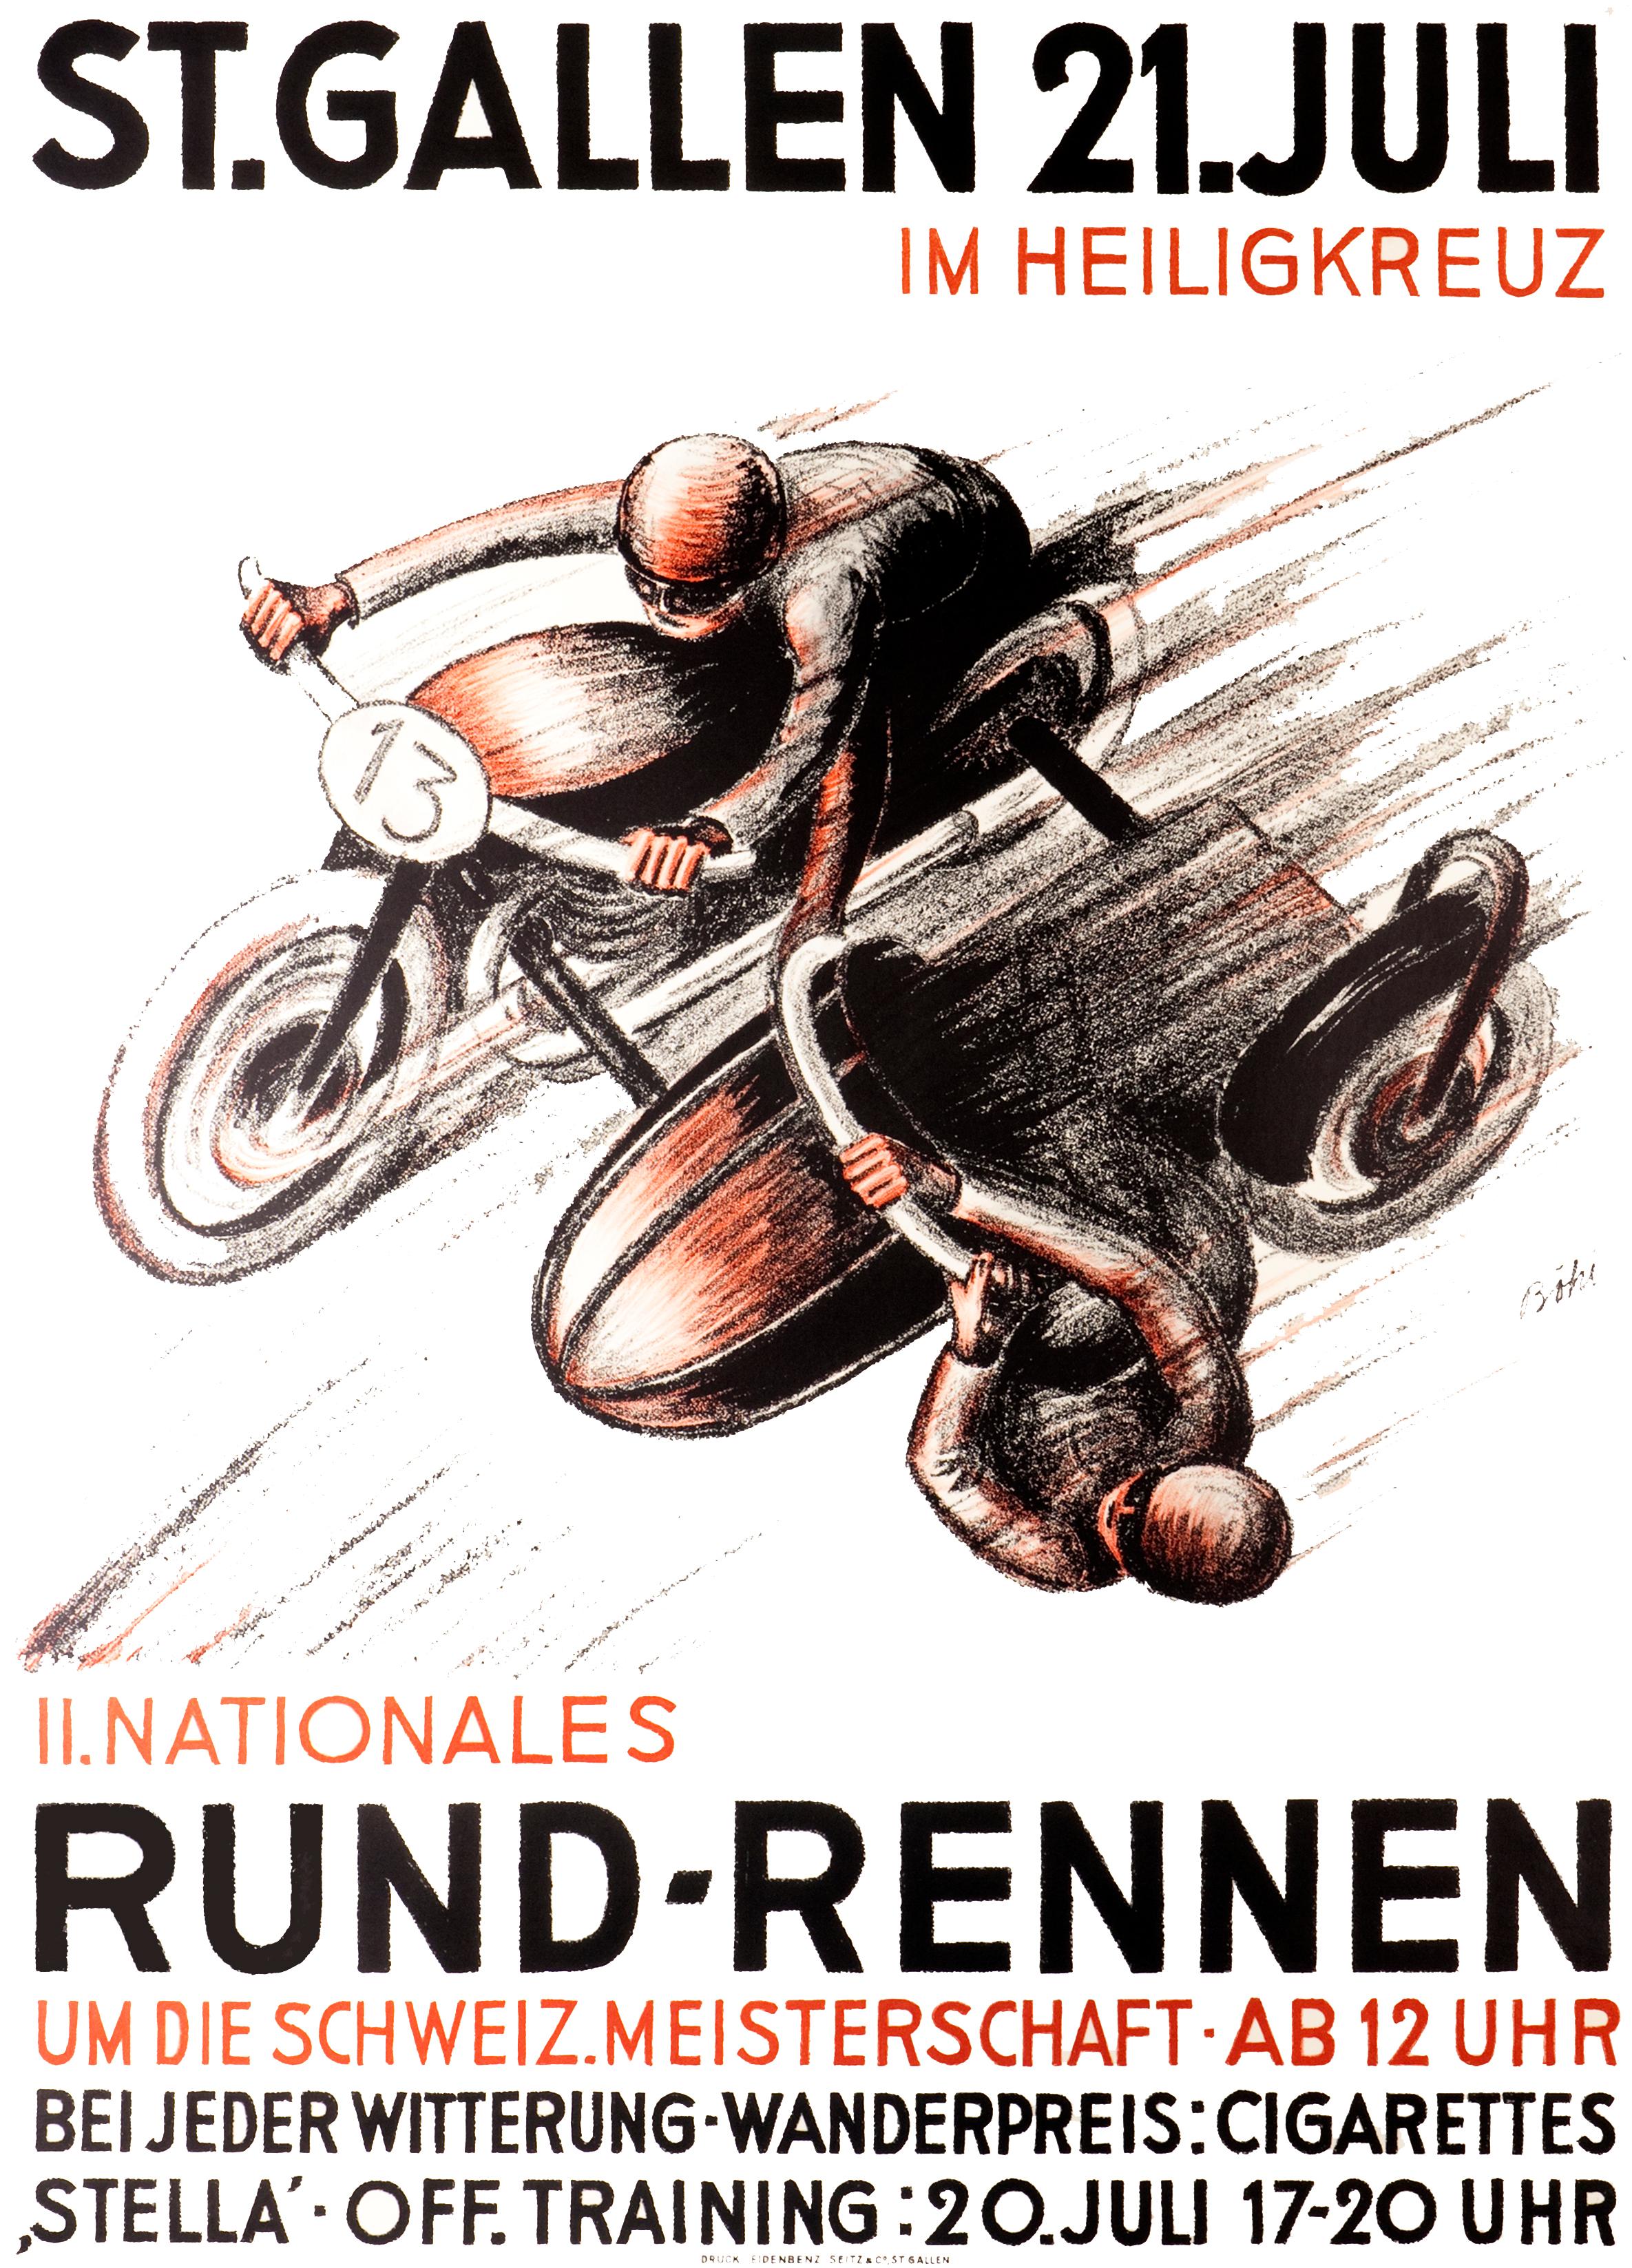 "St. Gallen - Il Nationales Rund-Rennen" Original Vintage Racing Poster - Print by Bohi